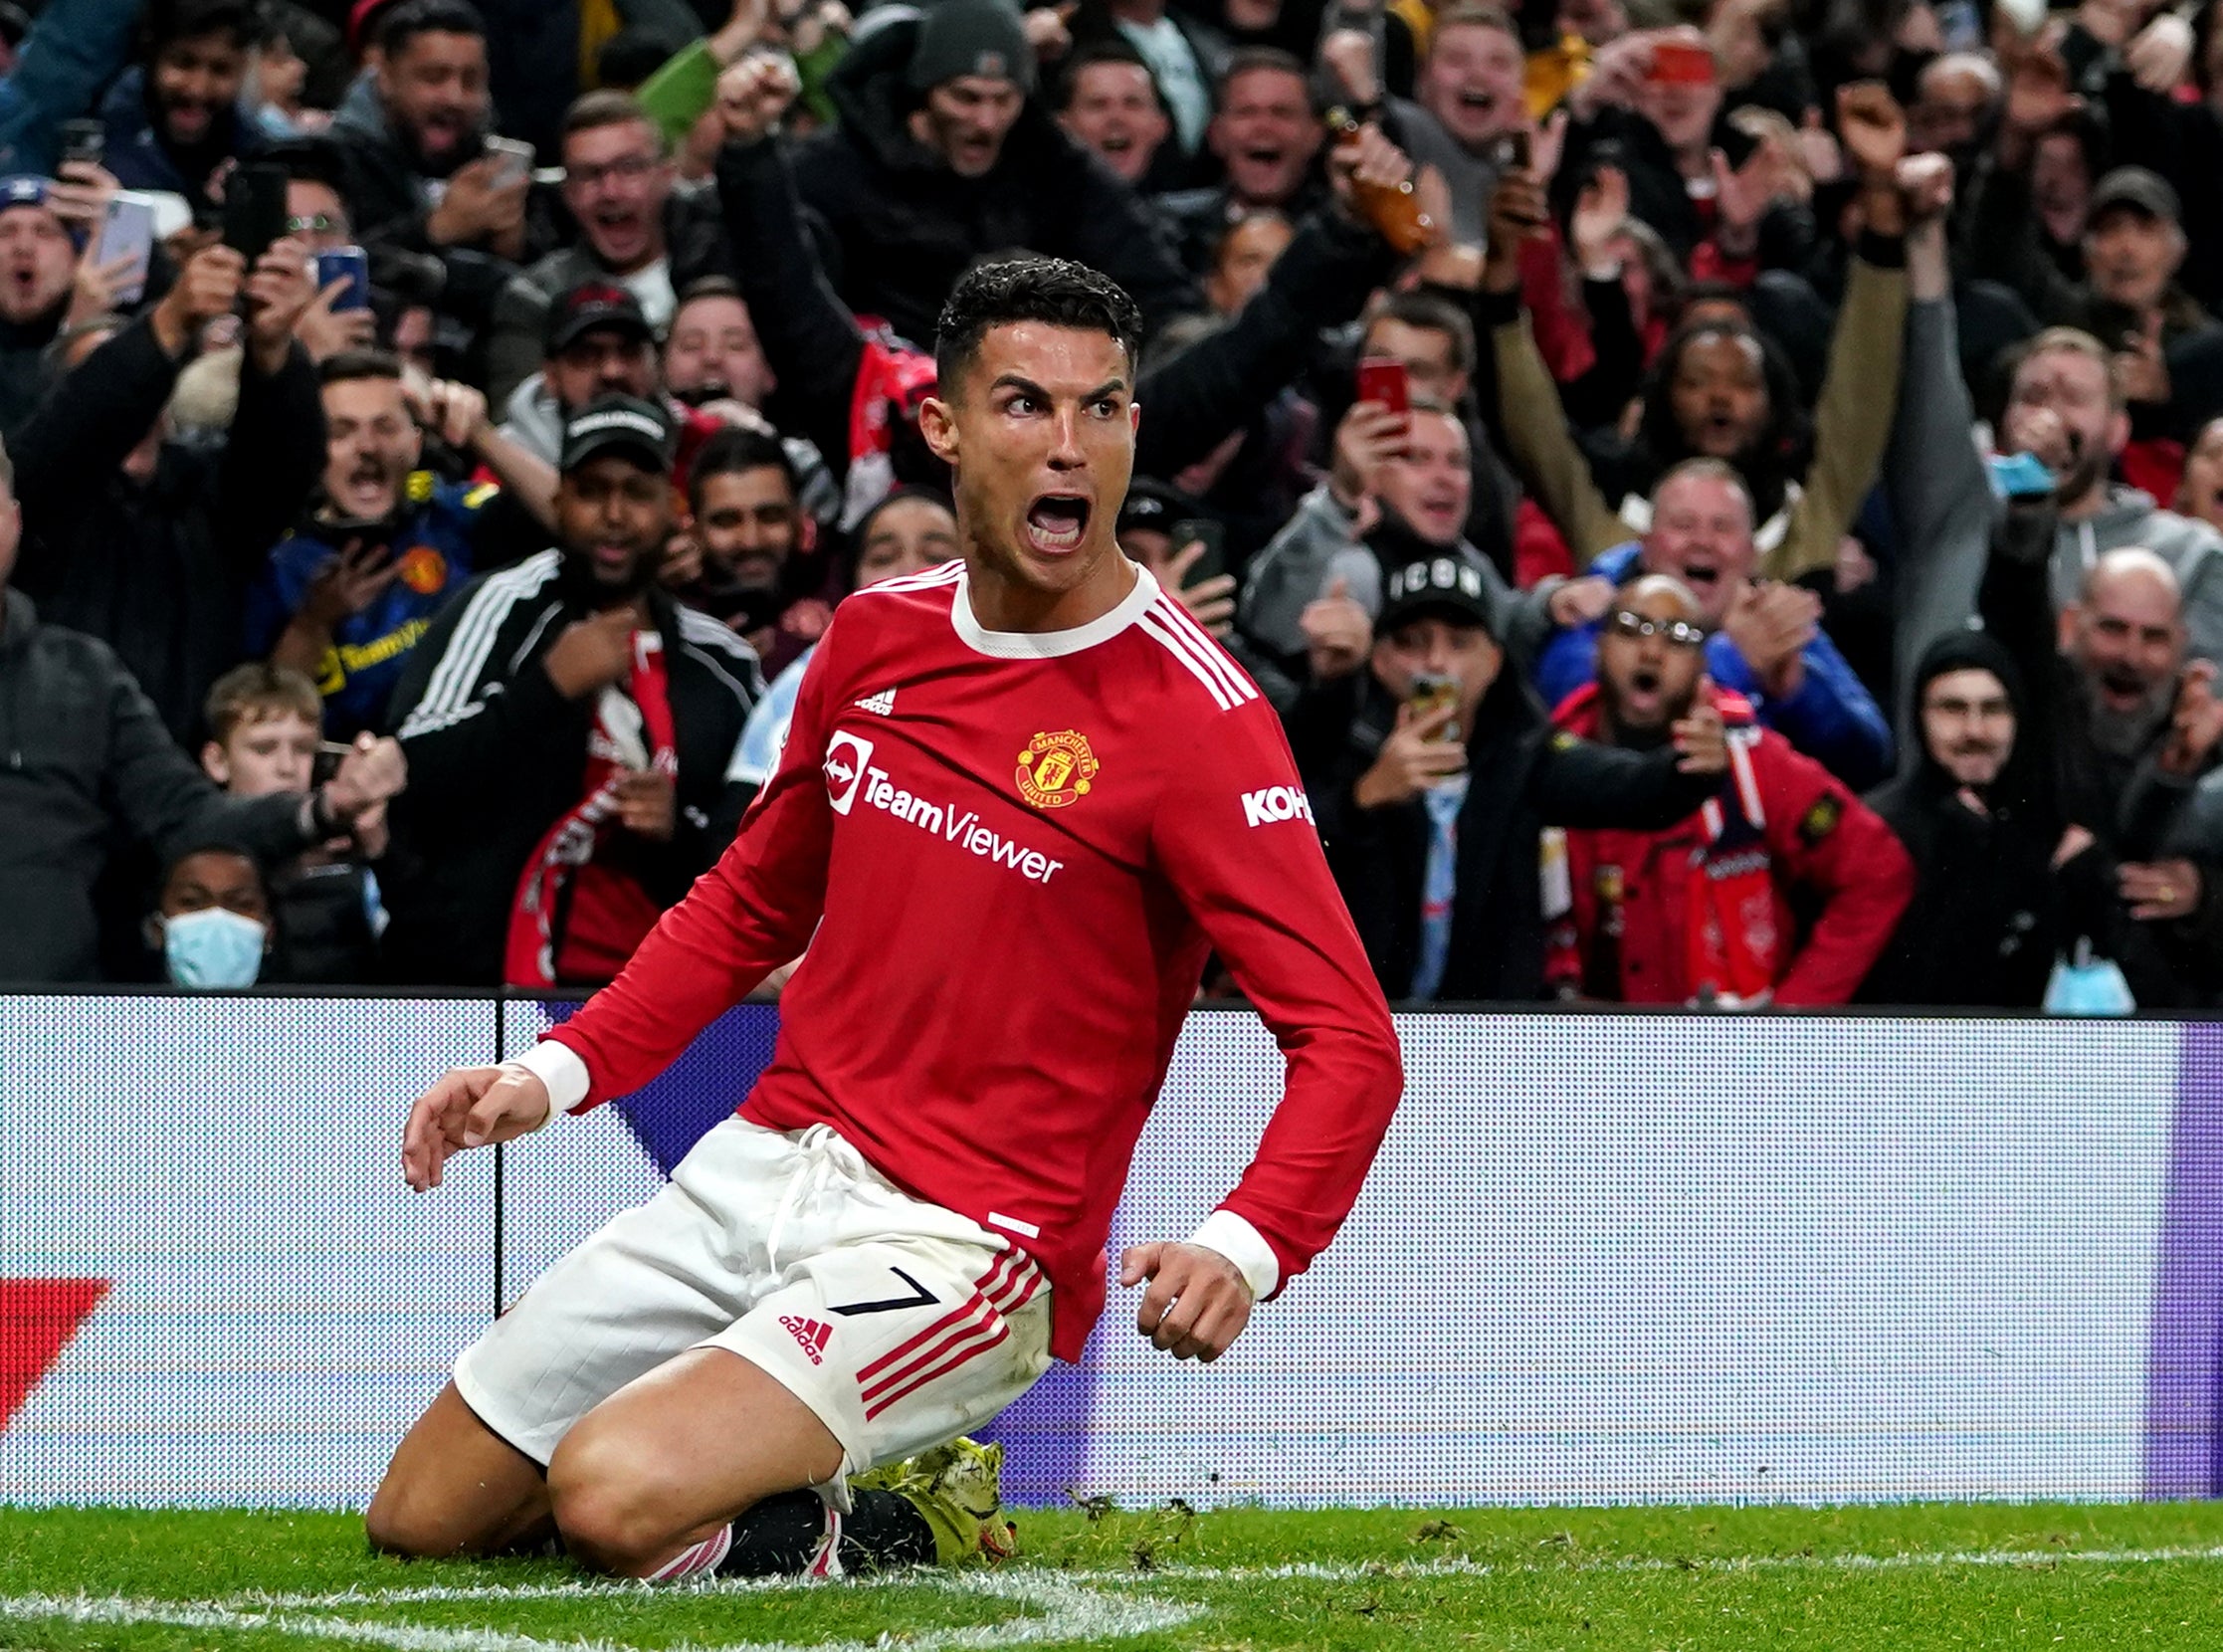 Record-breaker Cristiano Ronaldo's Champions League record goes on |